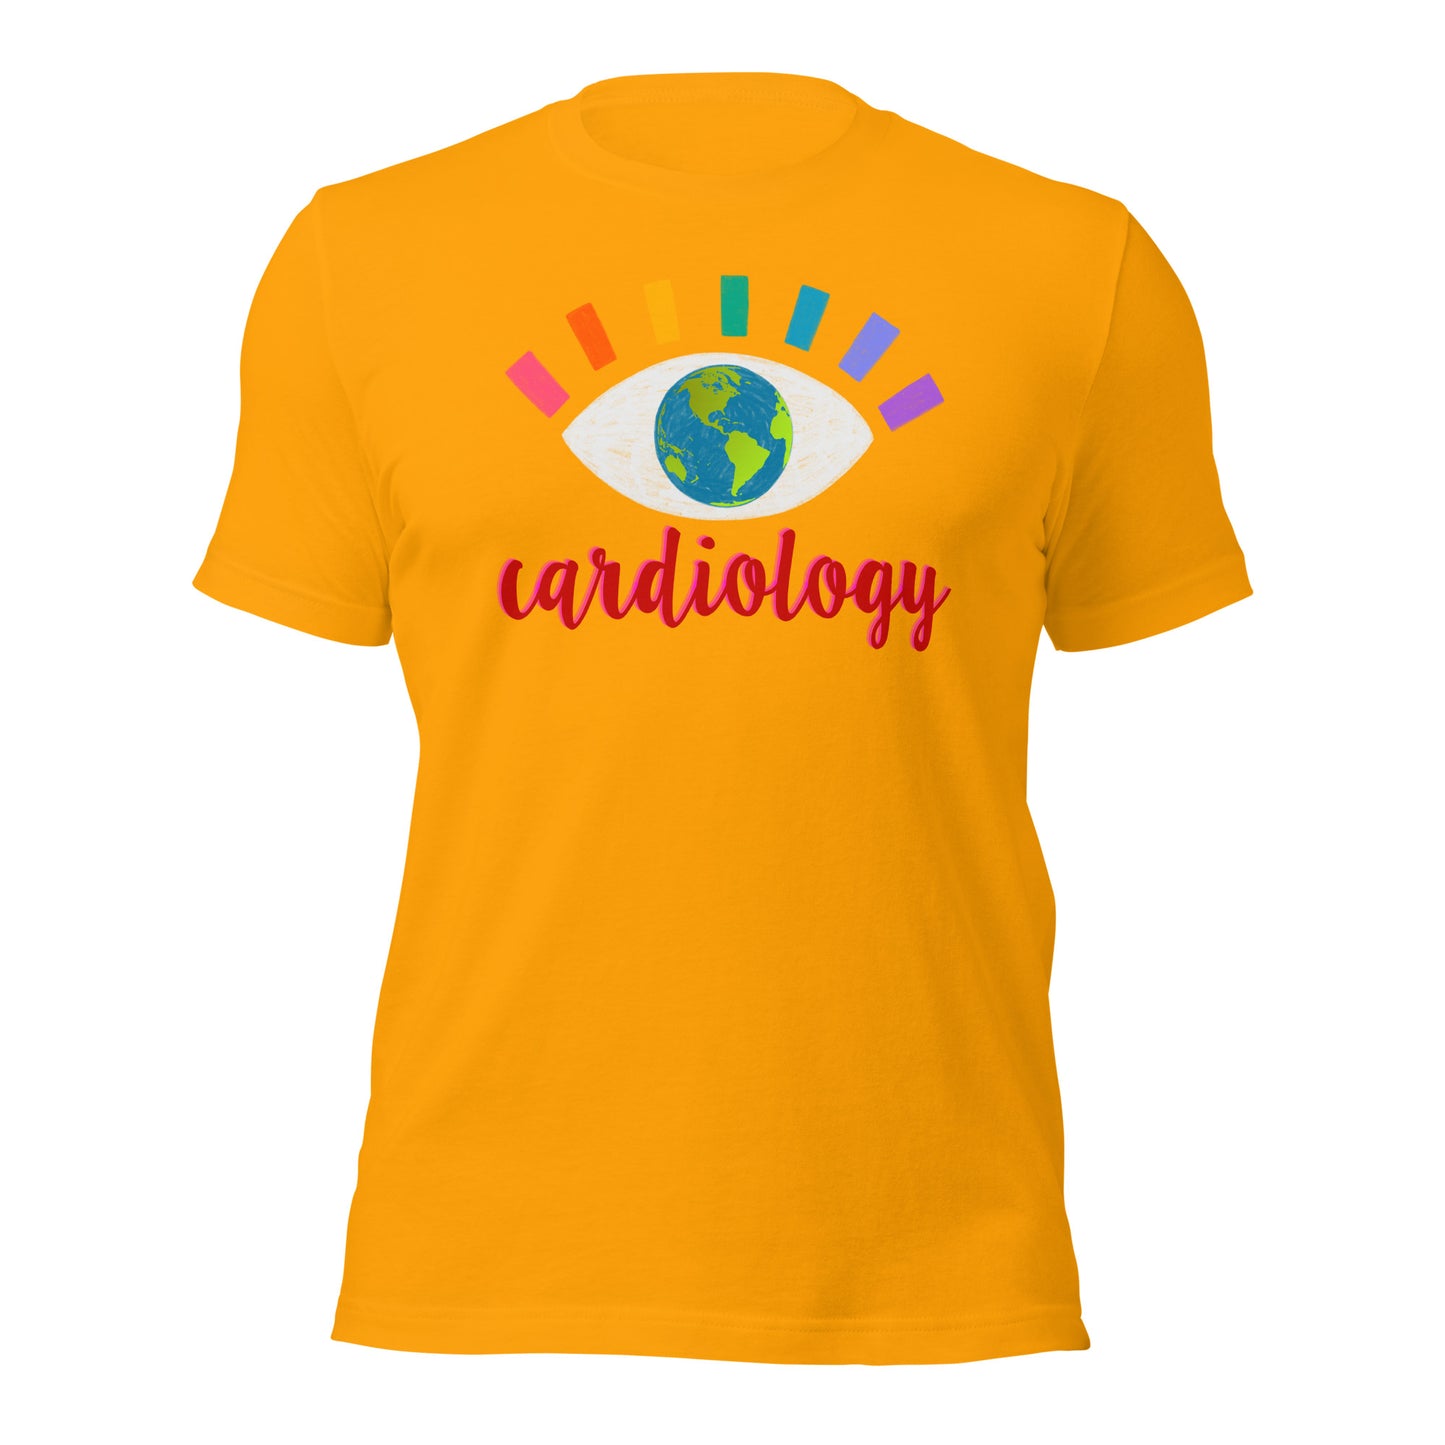 CARDIOLOGY Unisex t-shirt